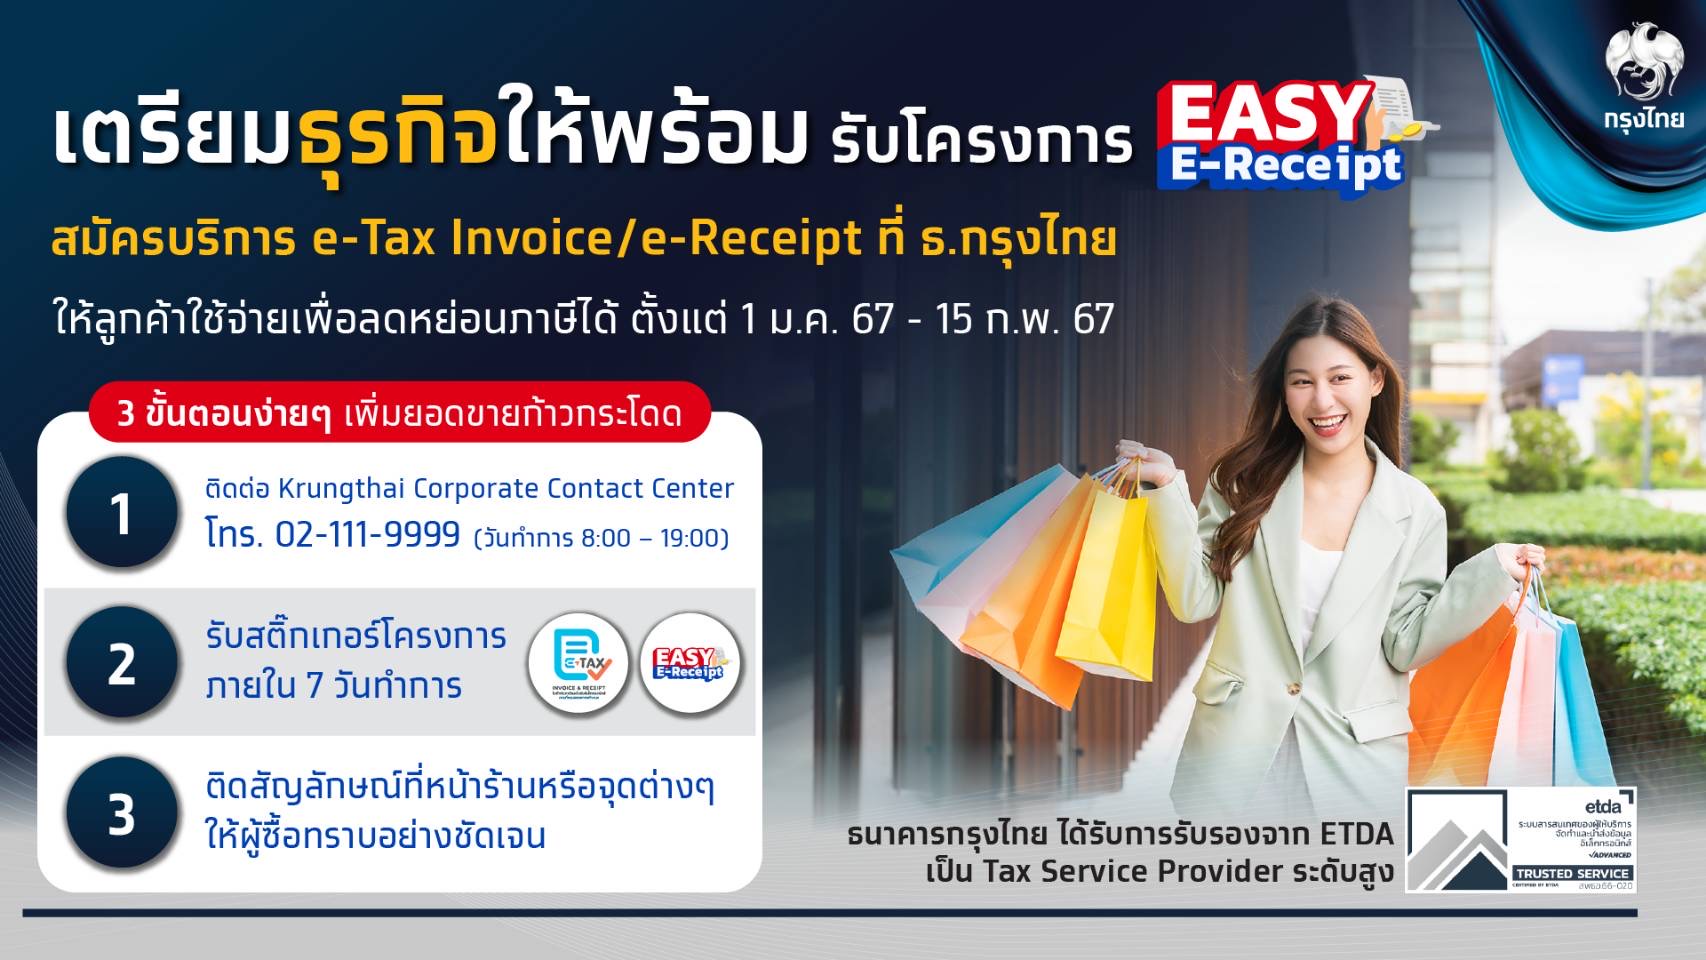 กรุงไทยขานรับโครงการ Easy E-Receipt ด้วยบริการ Krungthai E-Tax / E-Receipt จัดทำใบกำกับภาษีอิเล็กทรอนิกส์